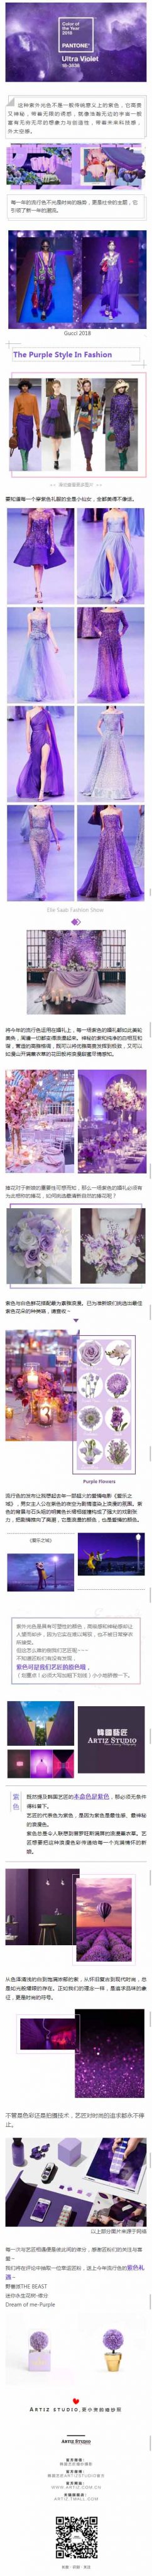 紫外光色紫色婚纱摄影模板影楼图片展示